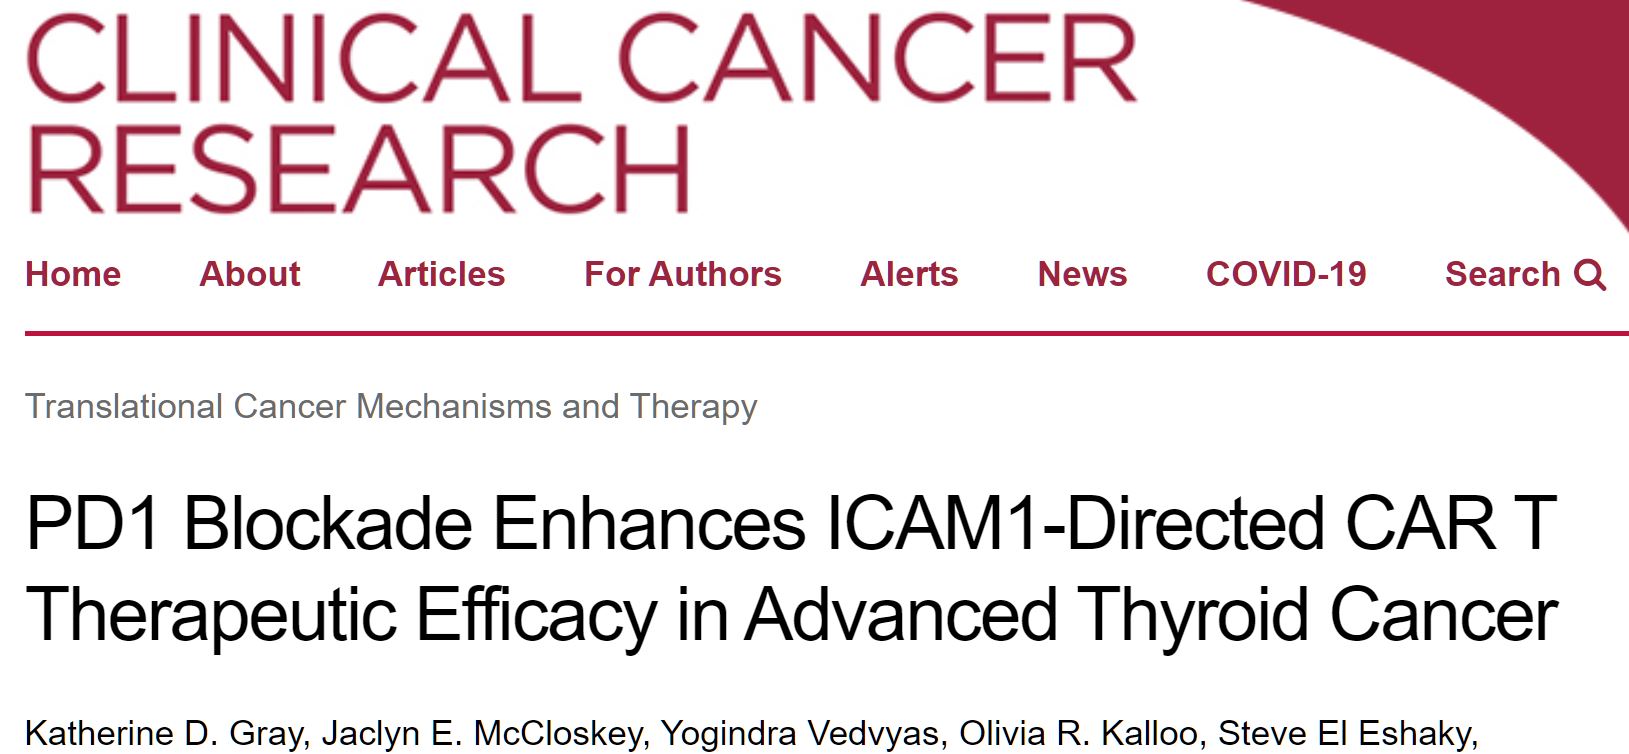 Clin Cancer Res：阻断<font color="red">PD1</font>可增强ICAM<font color="red">1</font>靶向CAR T细胞治疗晚期甲状腺癌的疗效